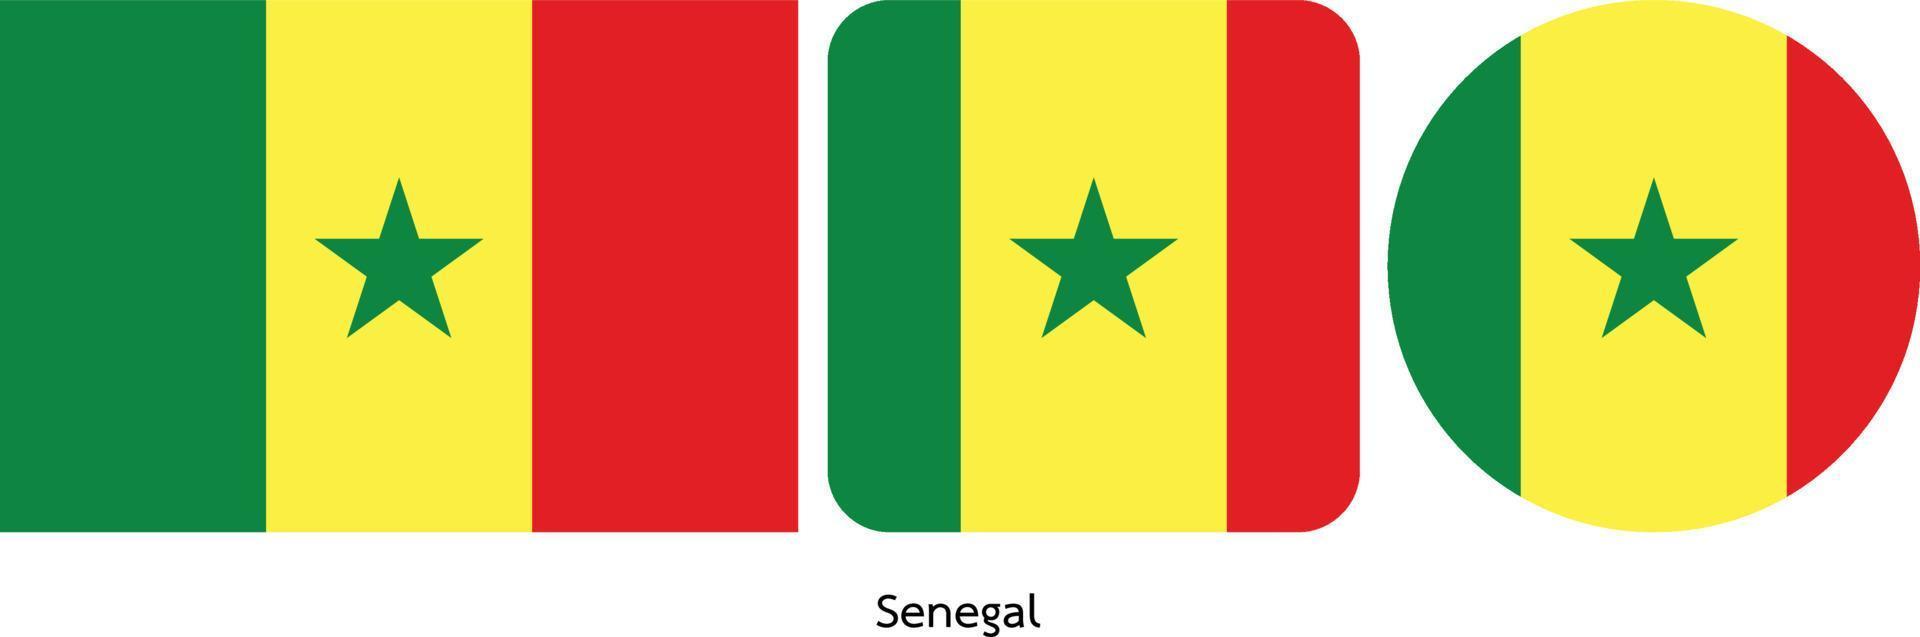 bandera de senegal, ilustración vectorial vector